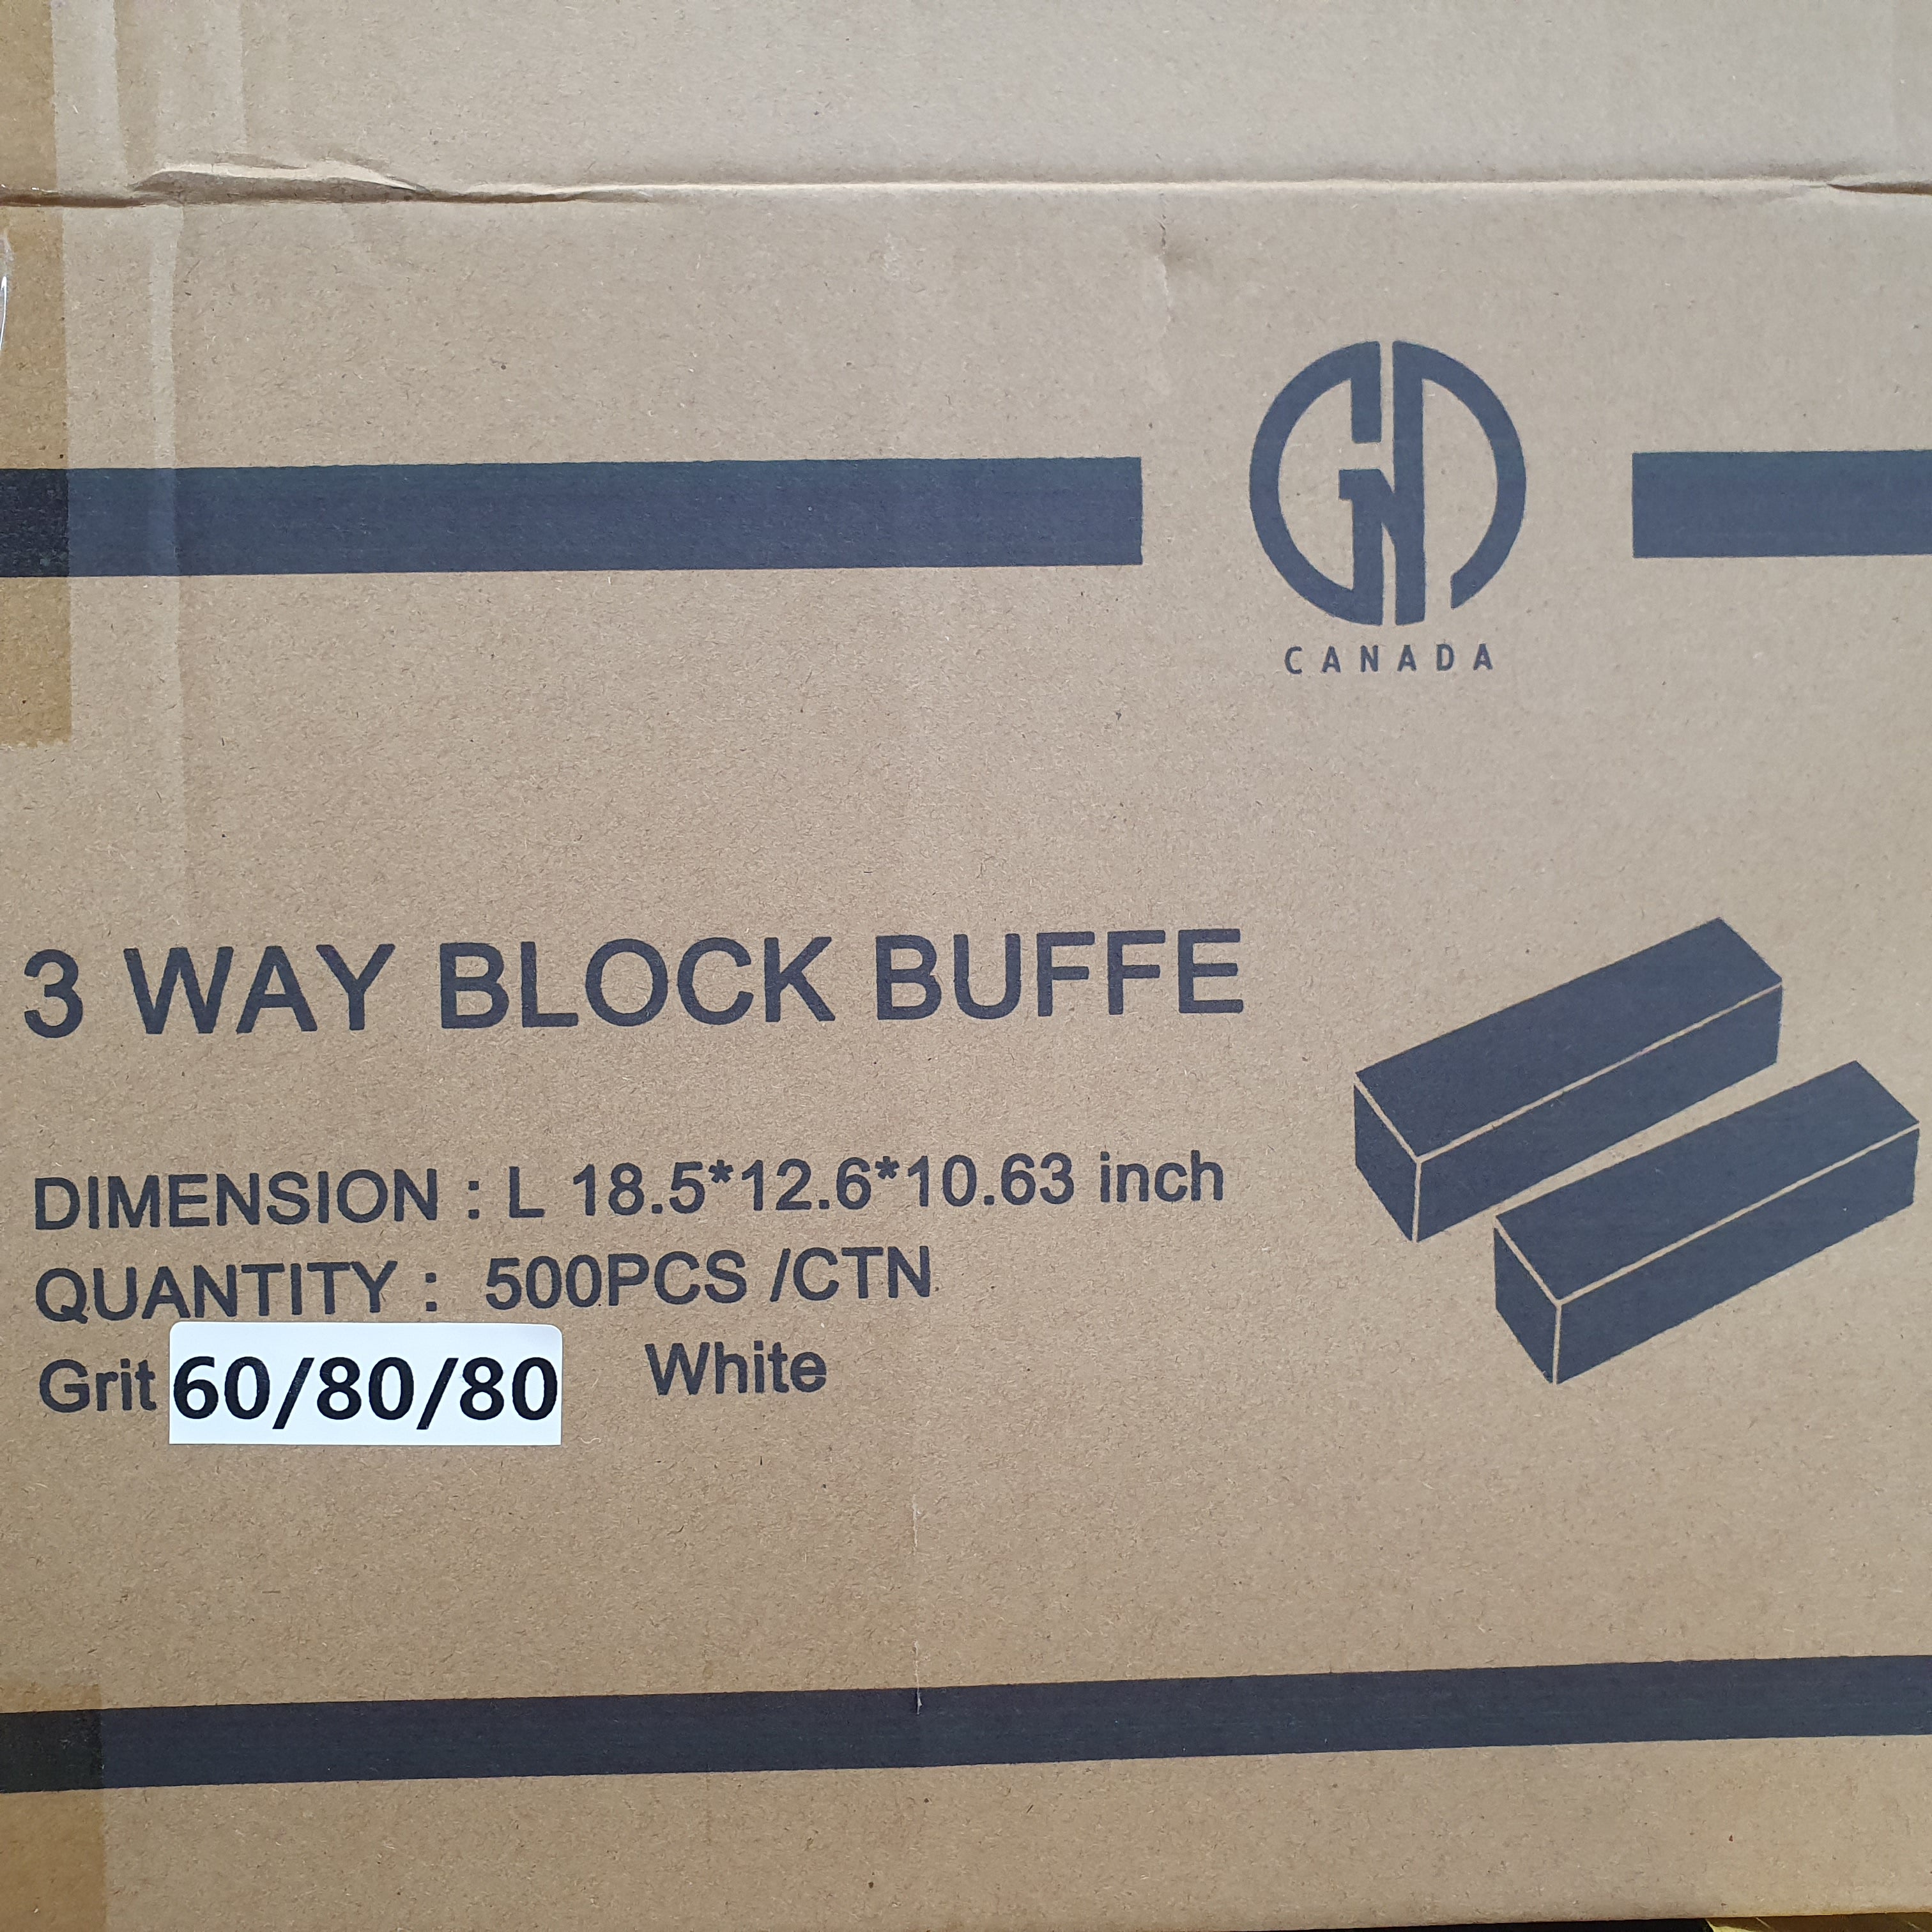 GND 3 WAY BLOCK BUFFER - 60/80/80 - WHITE - 500 PCS